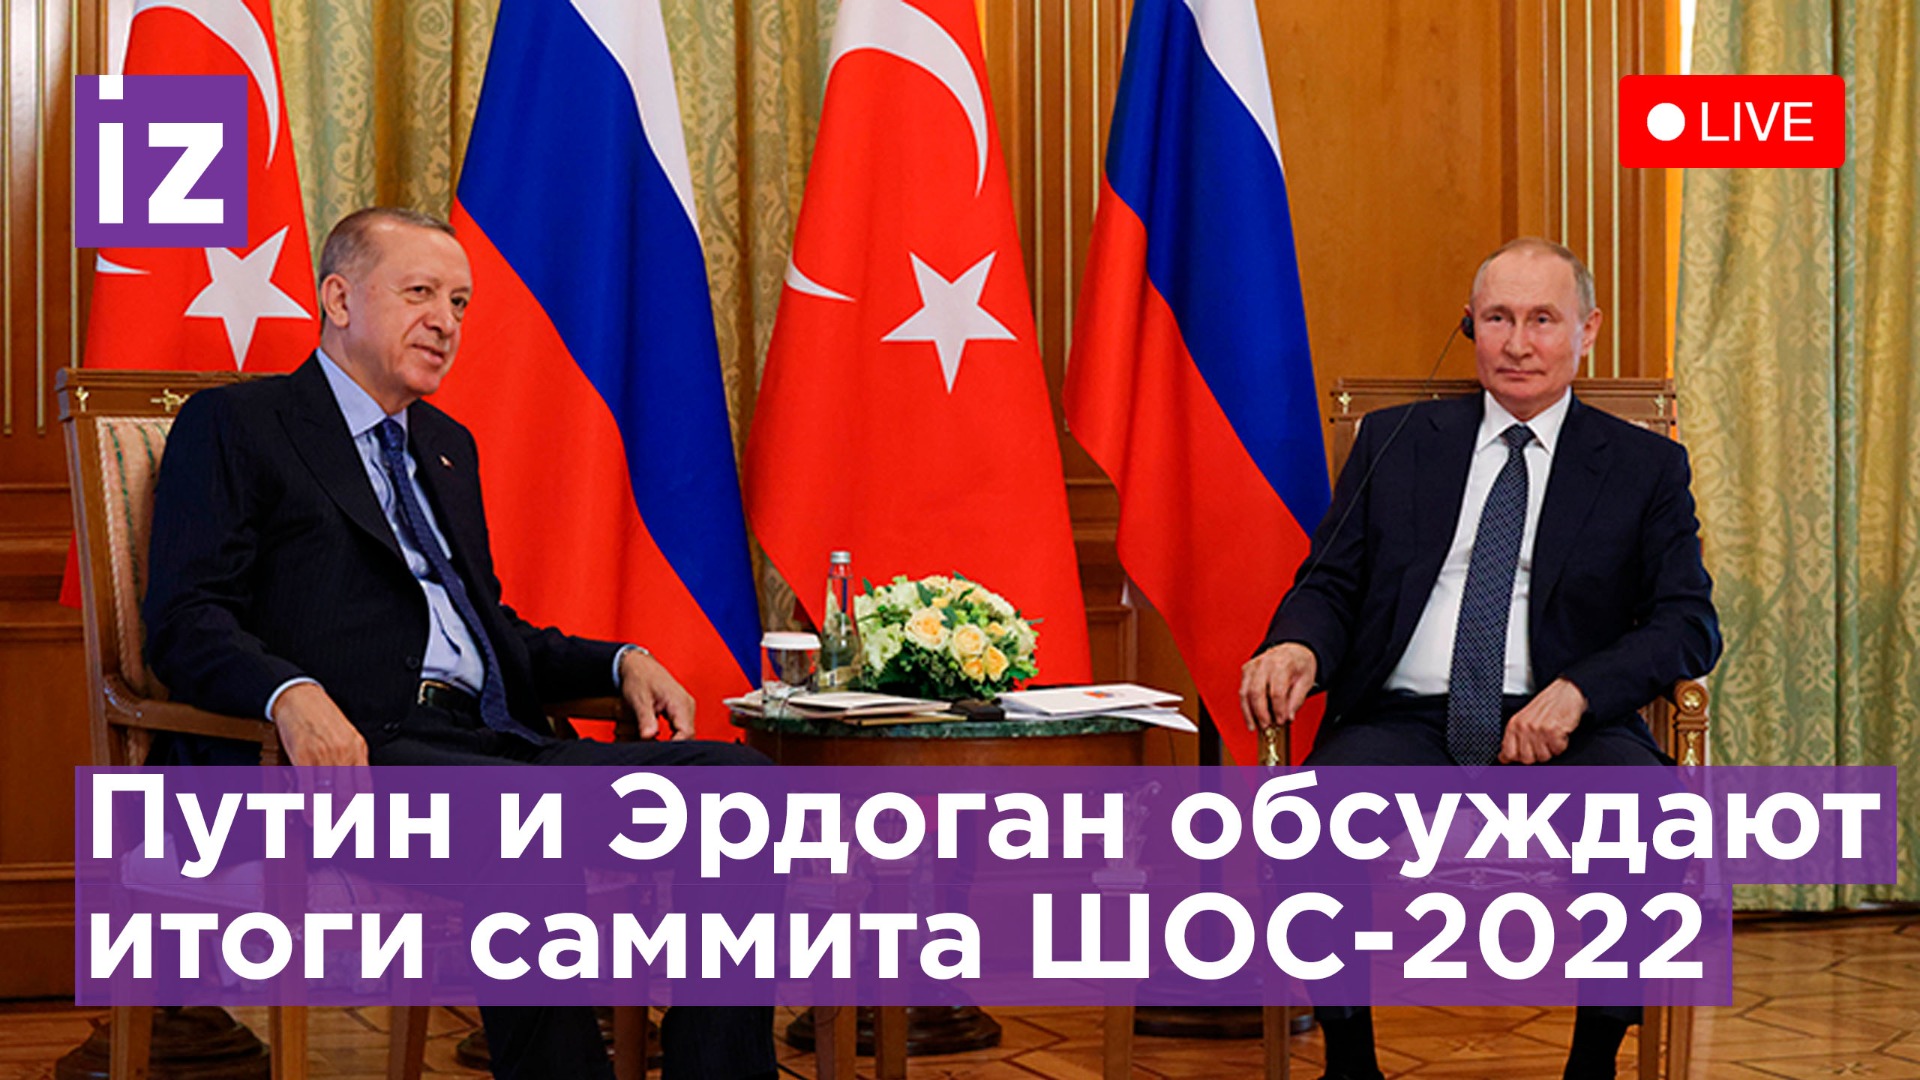 Президенты России и Турции Путин и Эрдоган проводят переговоры на ШОС-2022. Прямая трансляция 